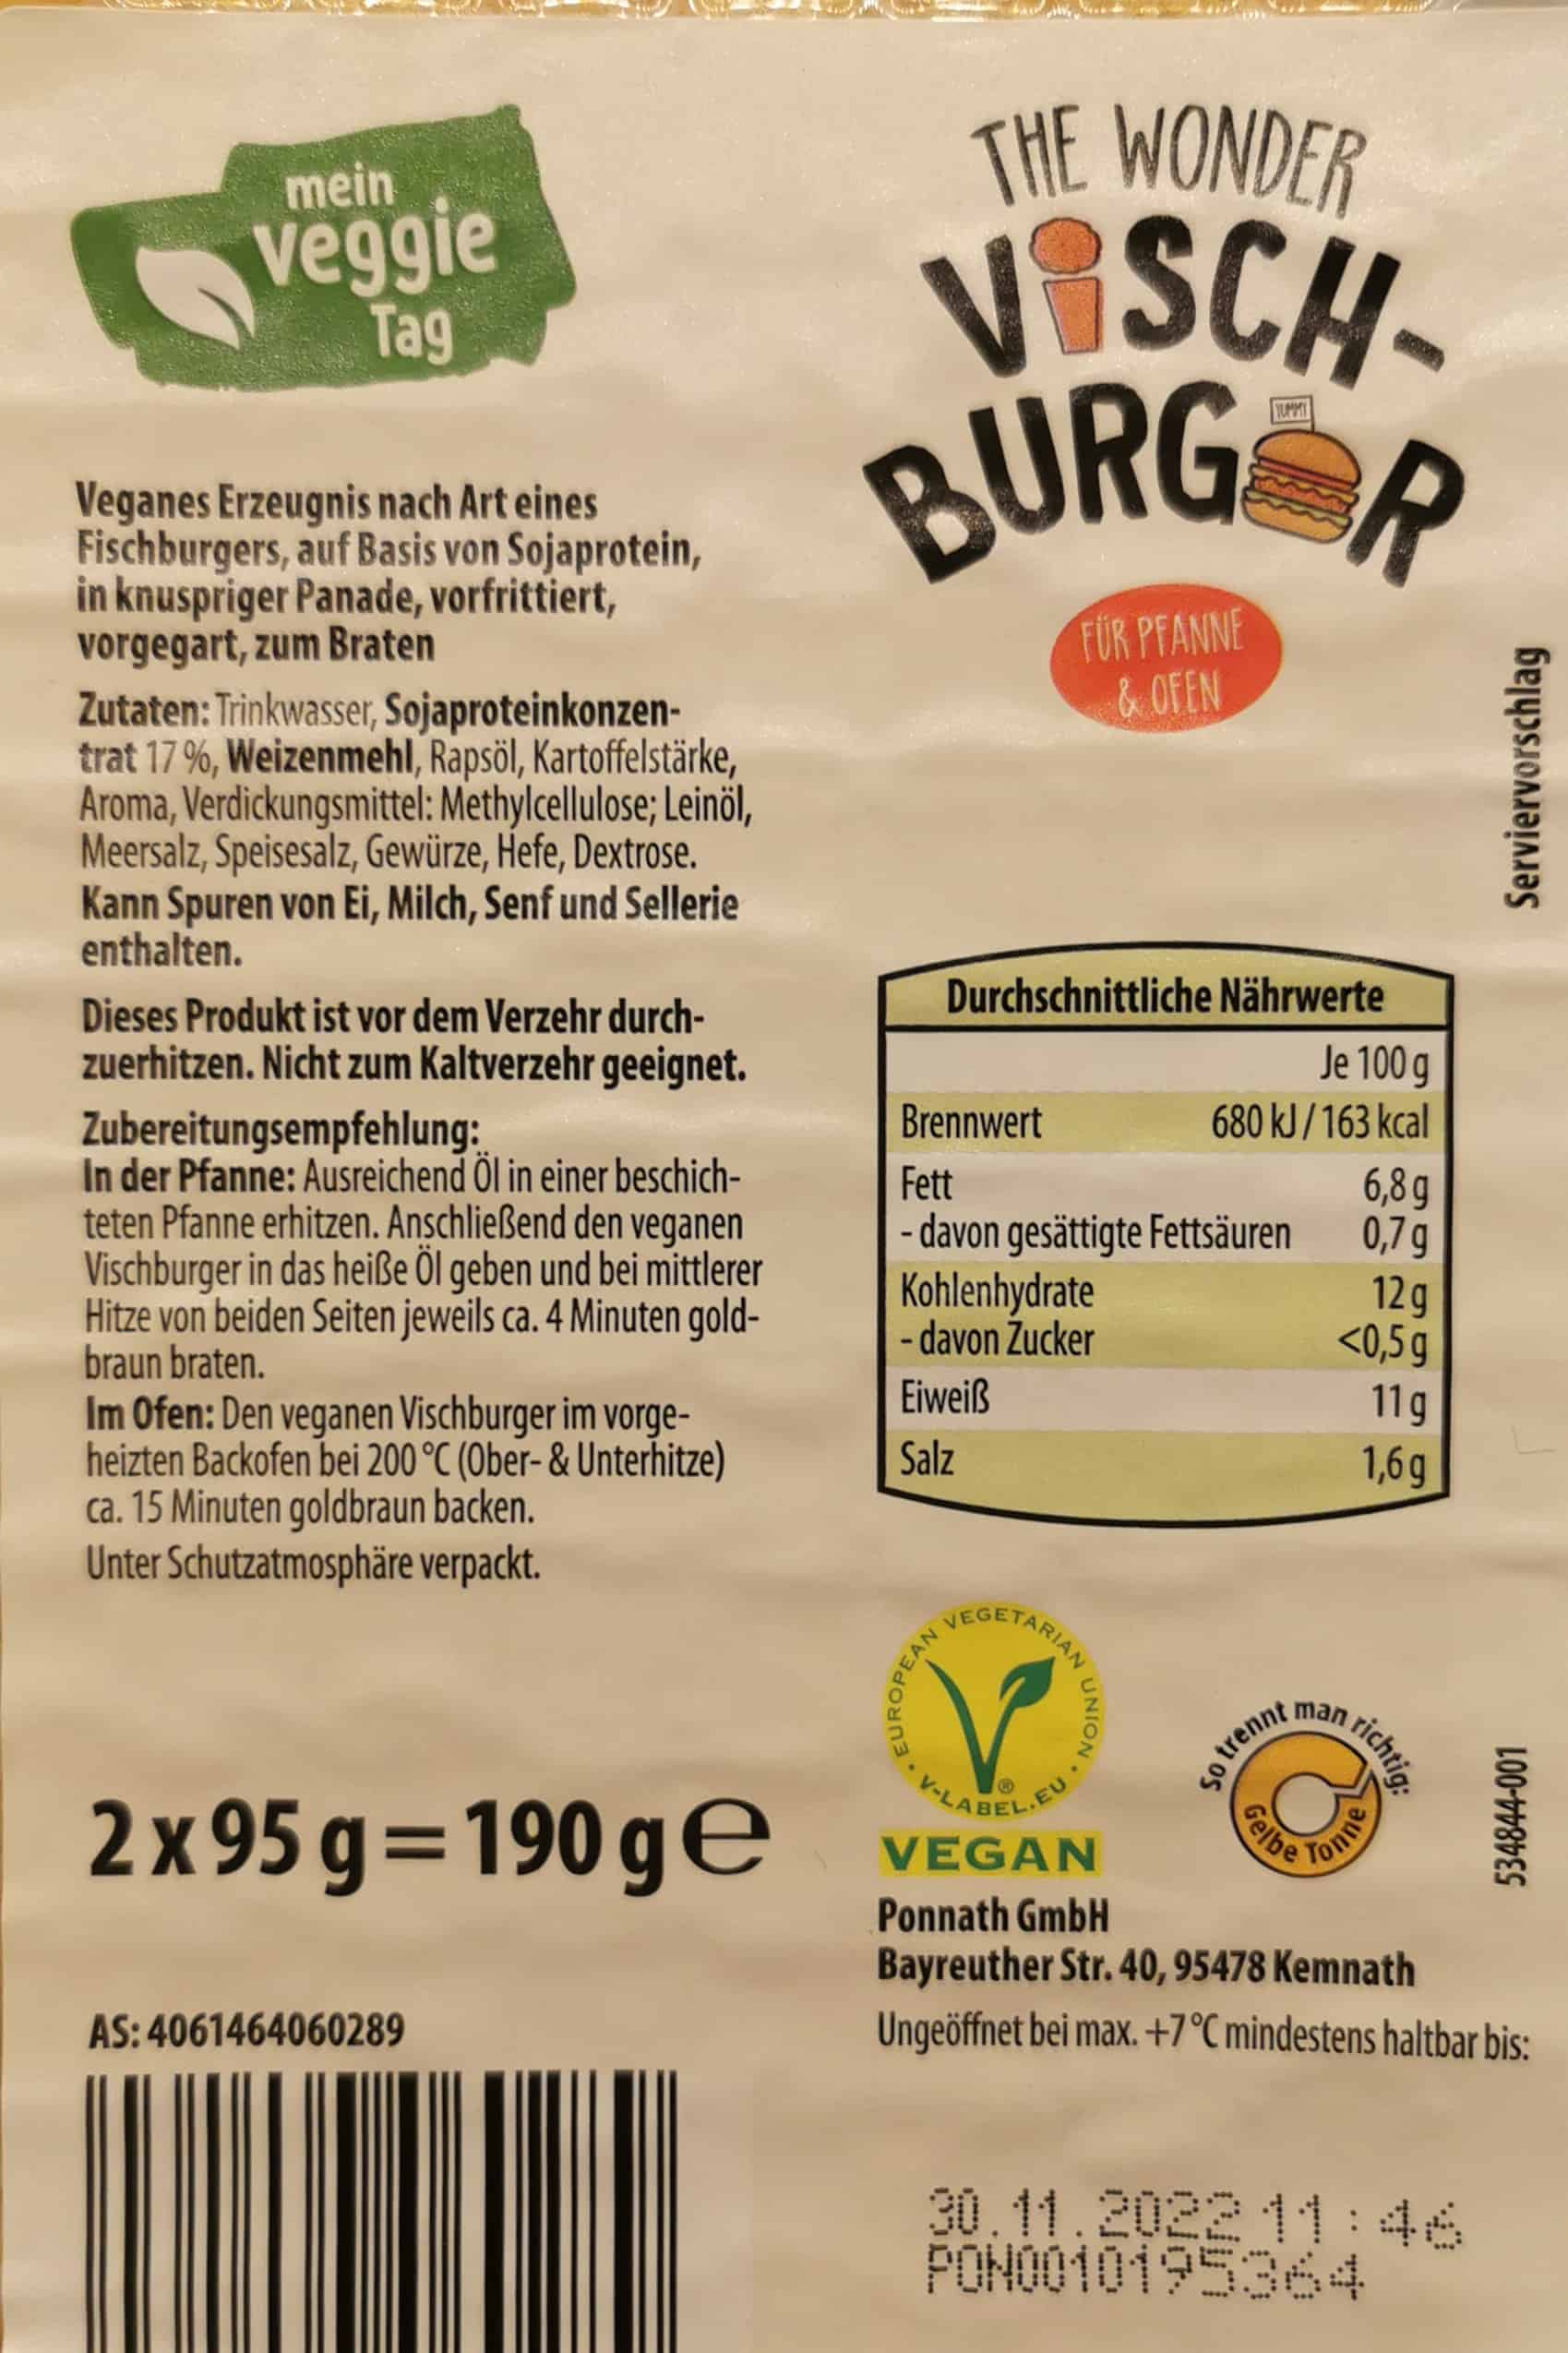 Mein Veggie Tag: The Wonder Visch Burger Zutaten & Inhaltsstoffe Nährwerte